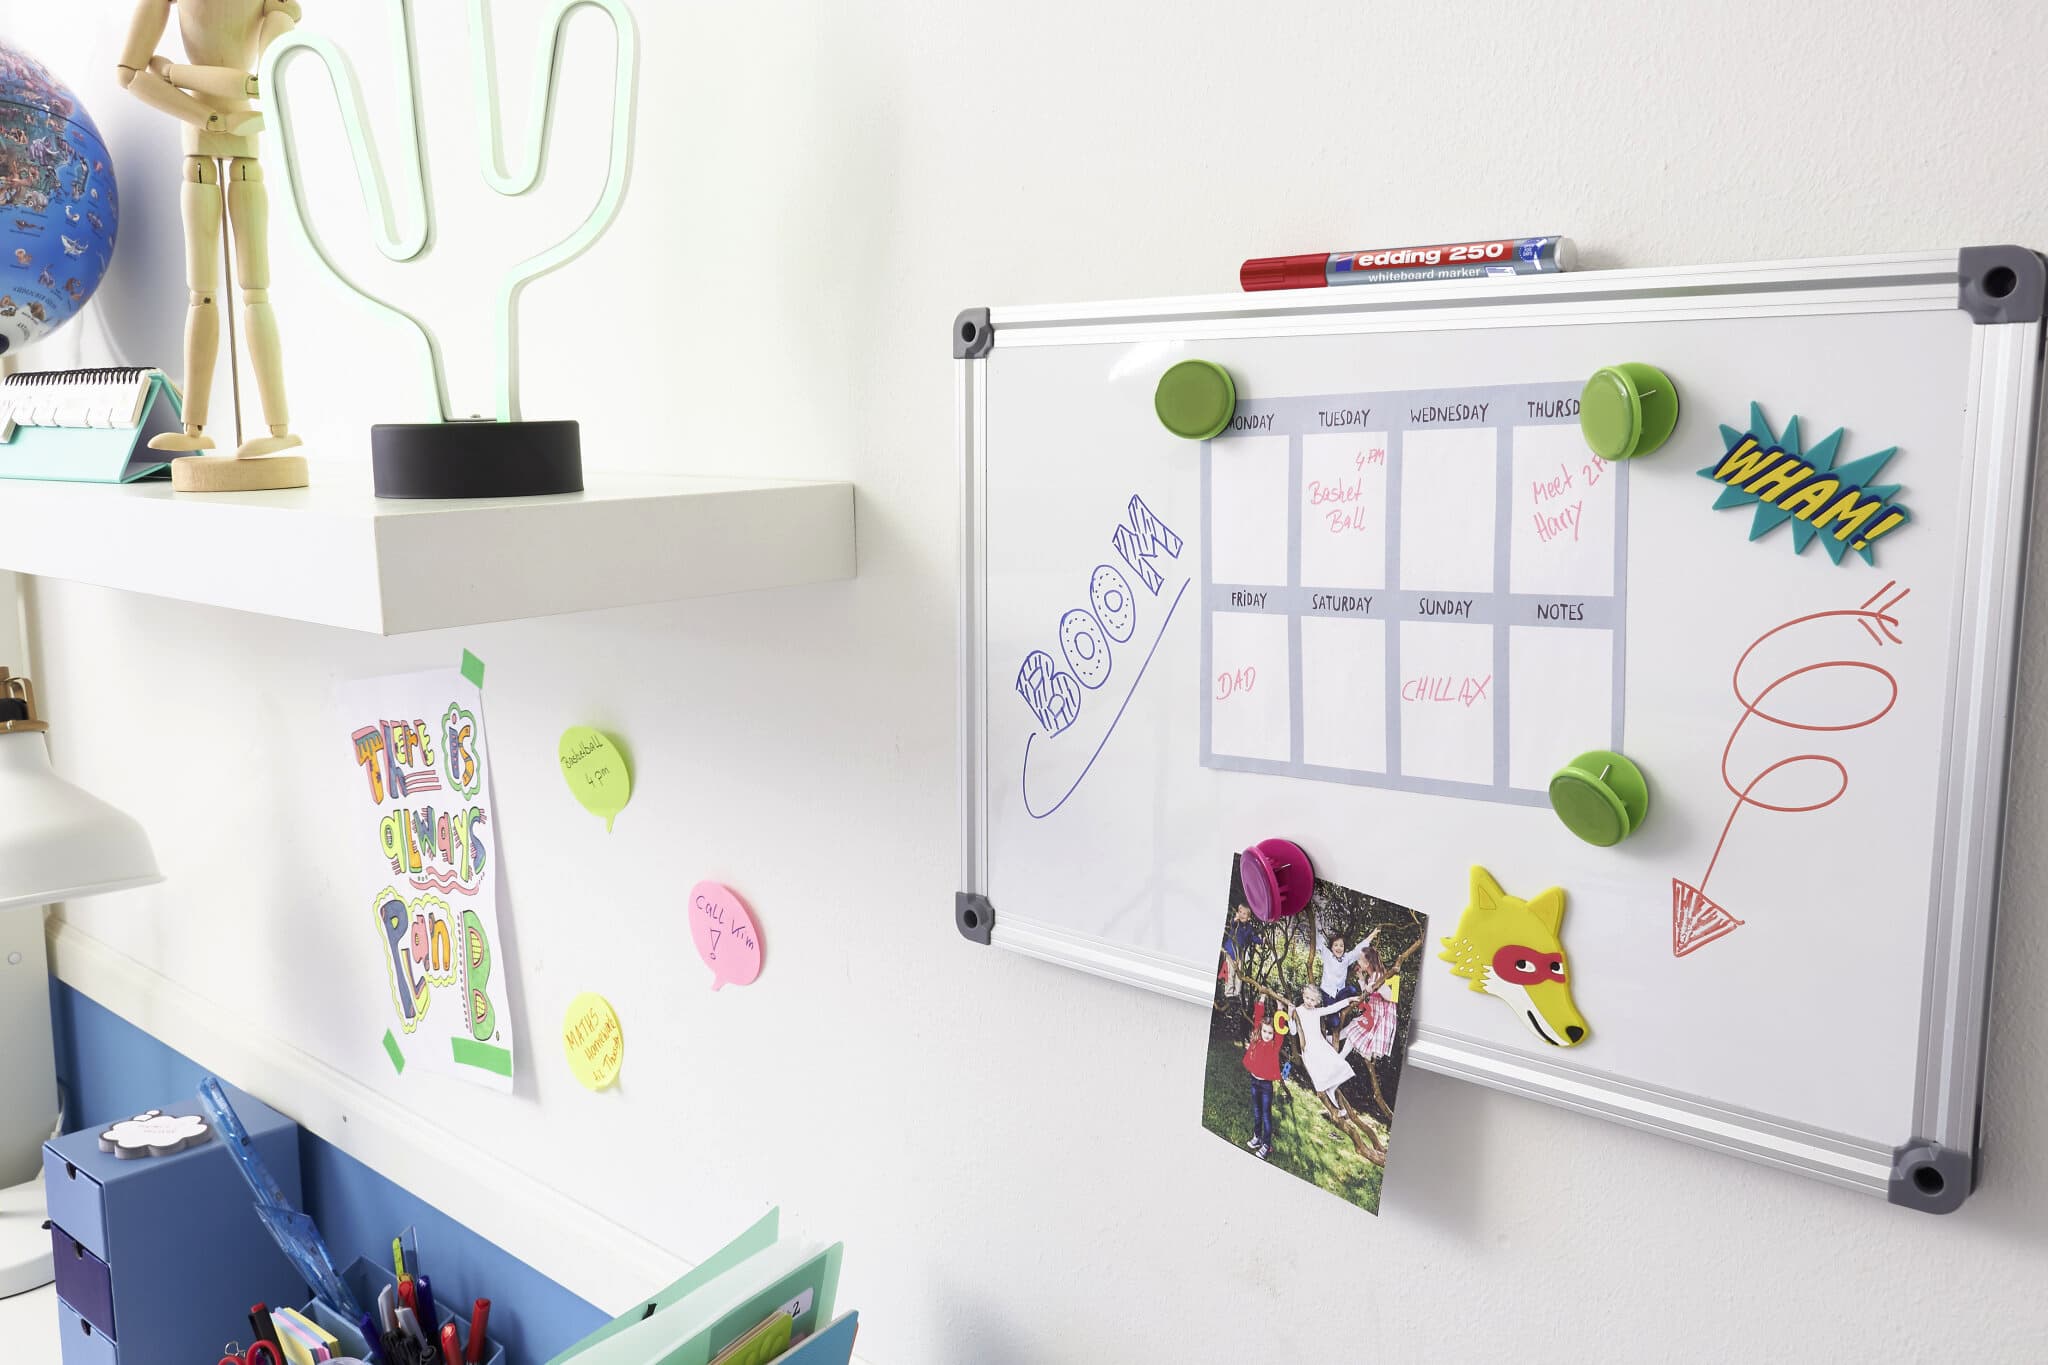 Eine farbenfrohe und kreative Home-Office-Wand mit einem edding Whiteboard-Planer mit skurrilen Magneten, Onomatopoeia-Dekorationen im Comic-Stil und einem ordentlichen Regal mit skurrilen Gegenständen. Wesentlich für die Einrichtung ist